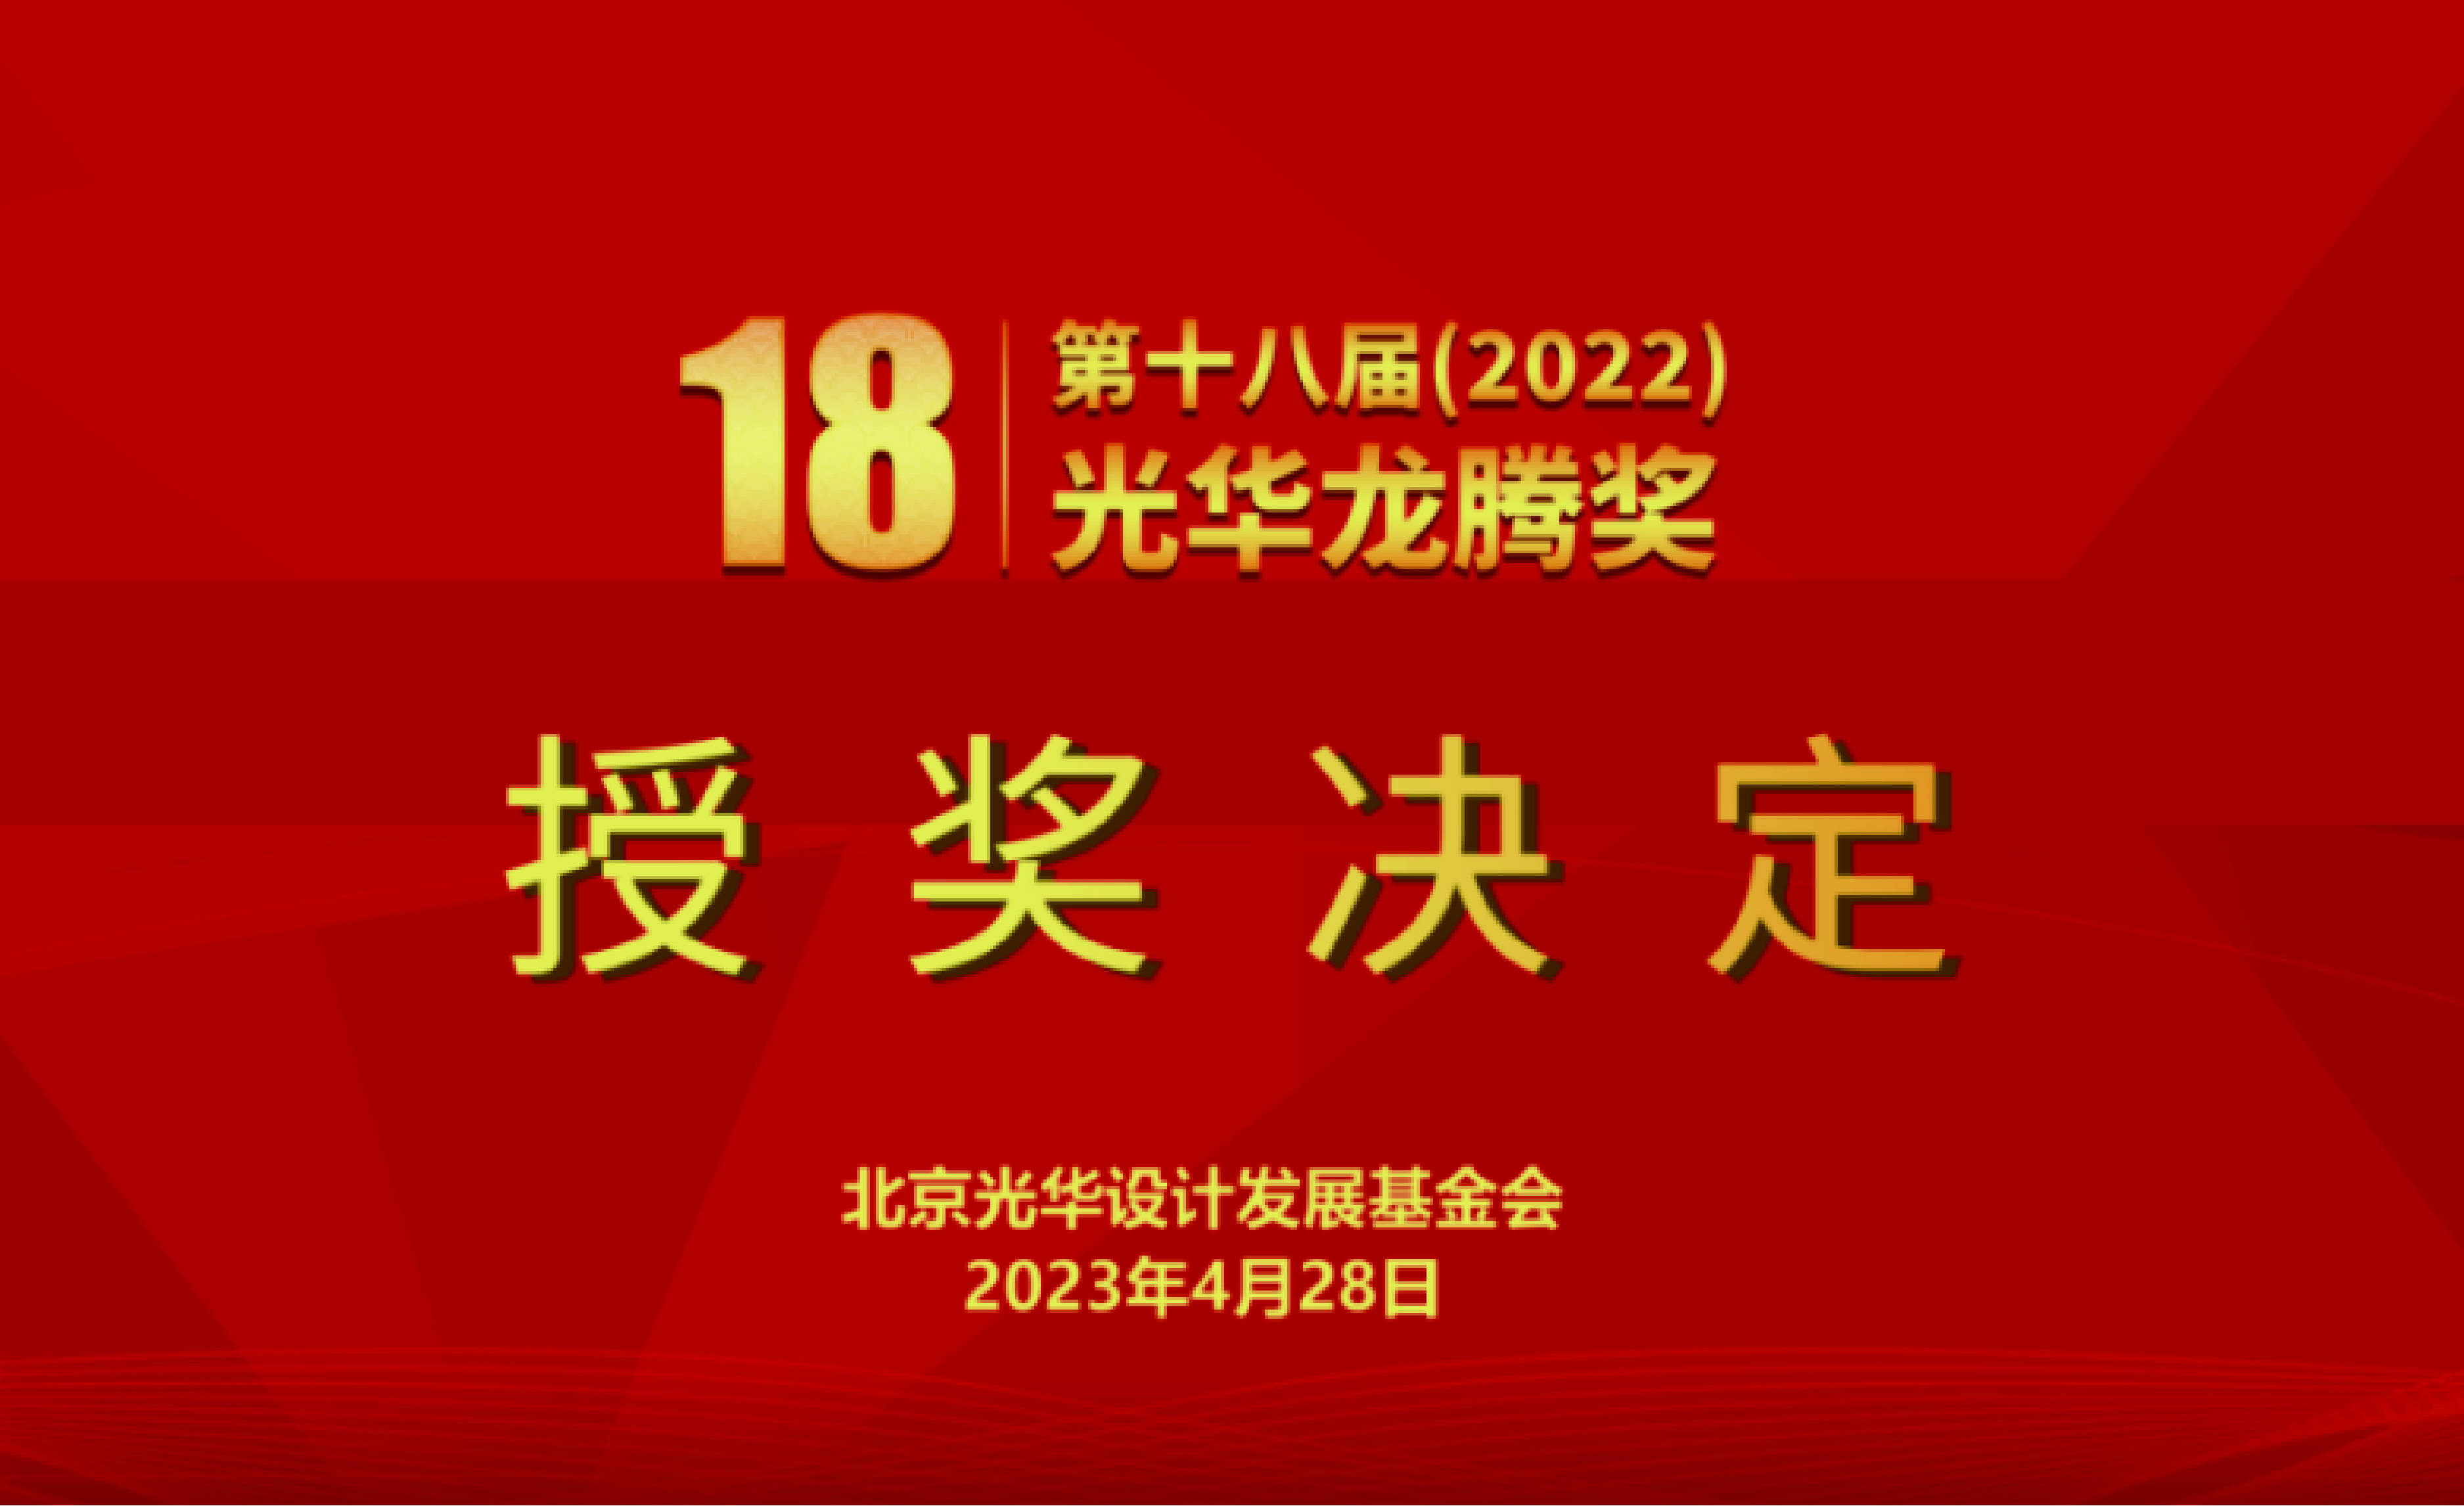 【授奖决定】第十八届（2022）光华龙腾奖•中国设计青年百人榜获奖名单公布